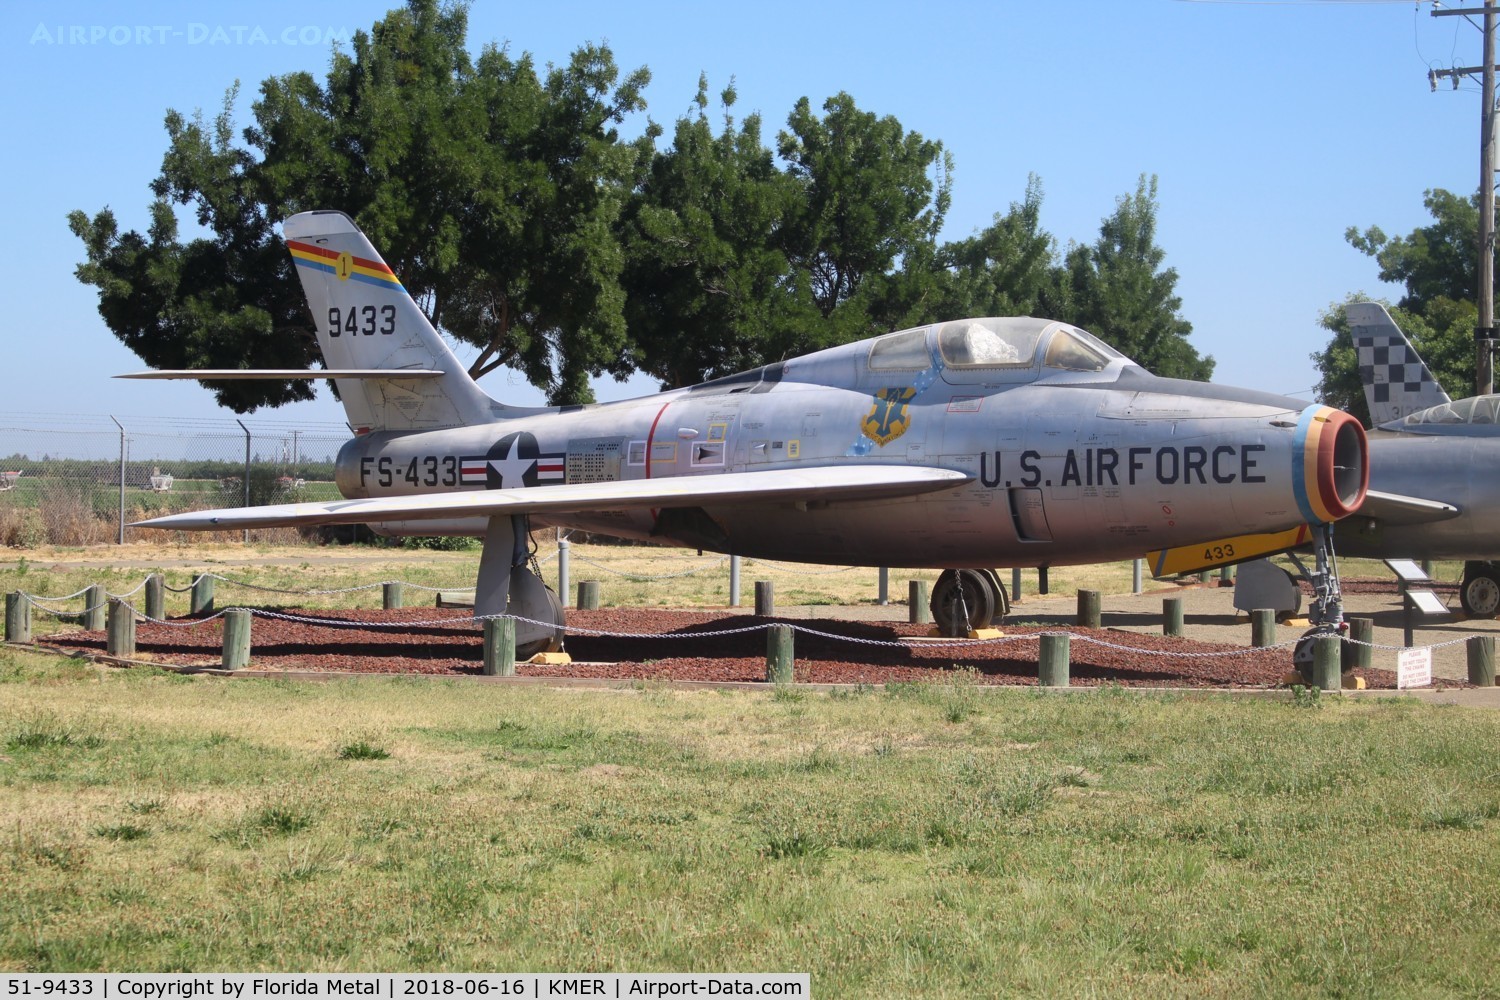 51-9433, 1951 General Motors F-84F Thunderstreak C/N Not found 51-9433, F-84F zx